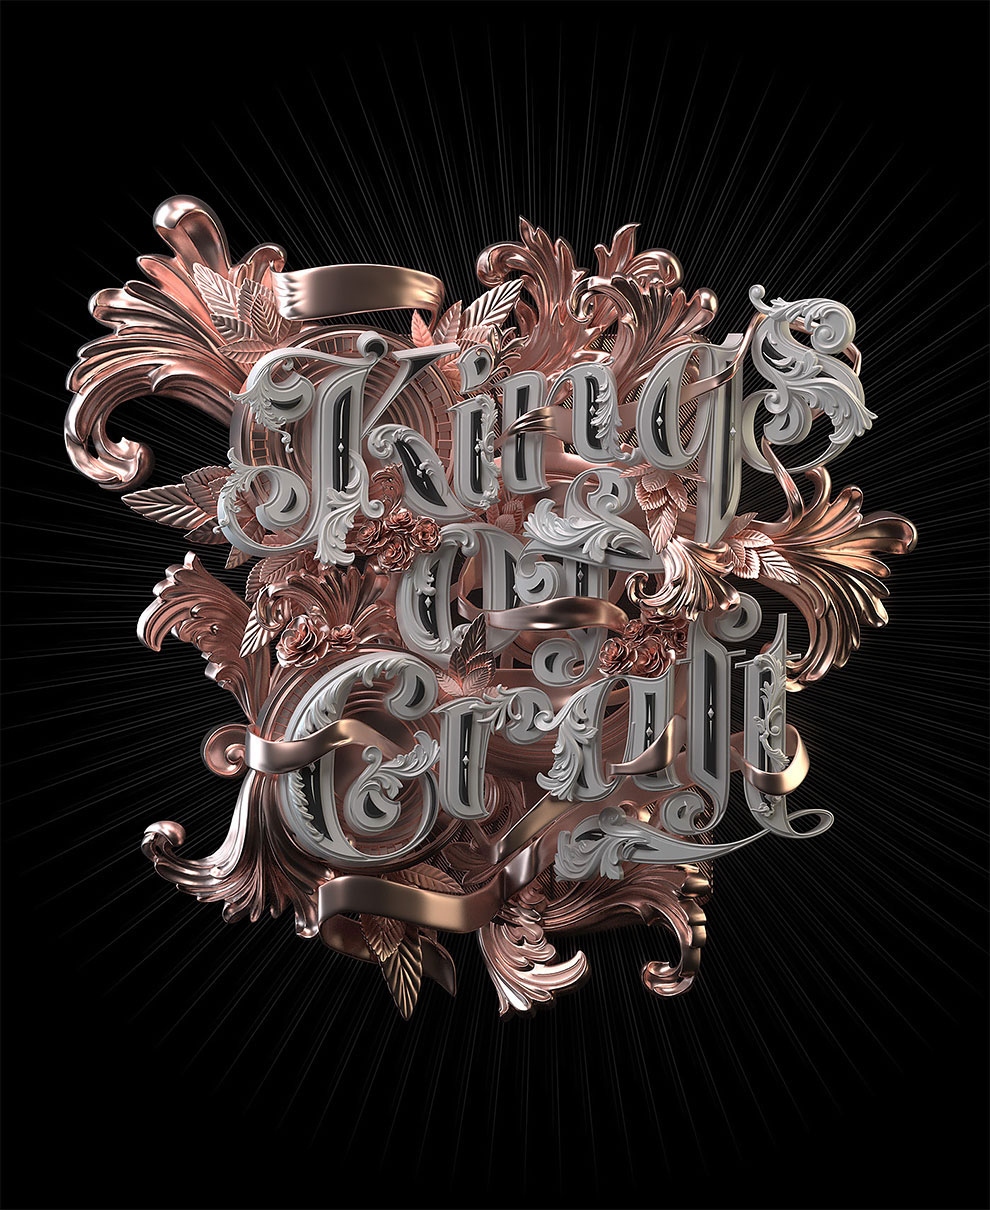 Кэтт Пхатт (Katt Phatt) 3D Typography